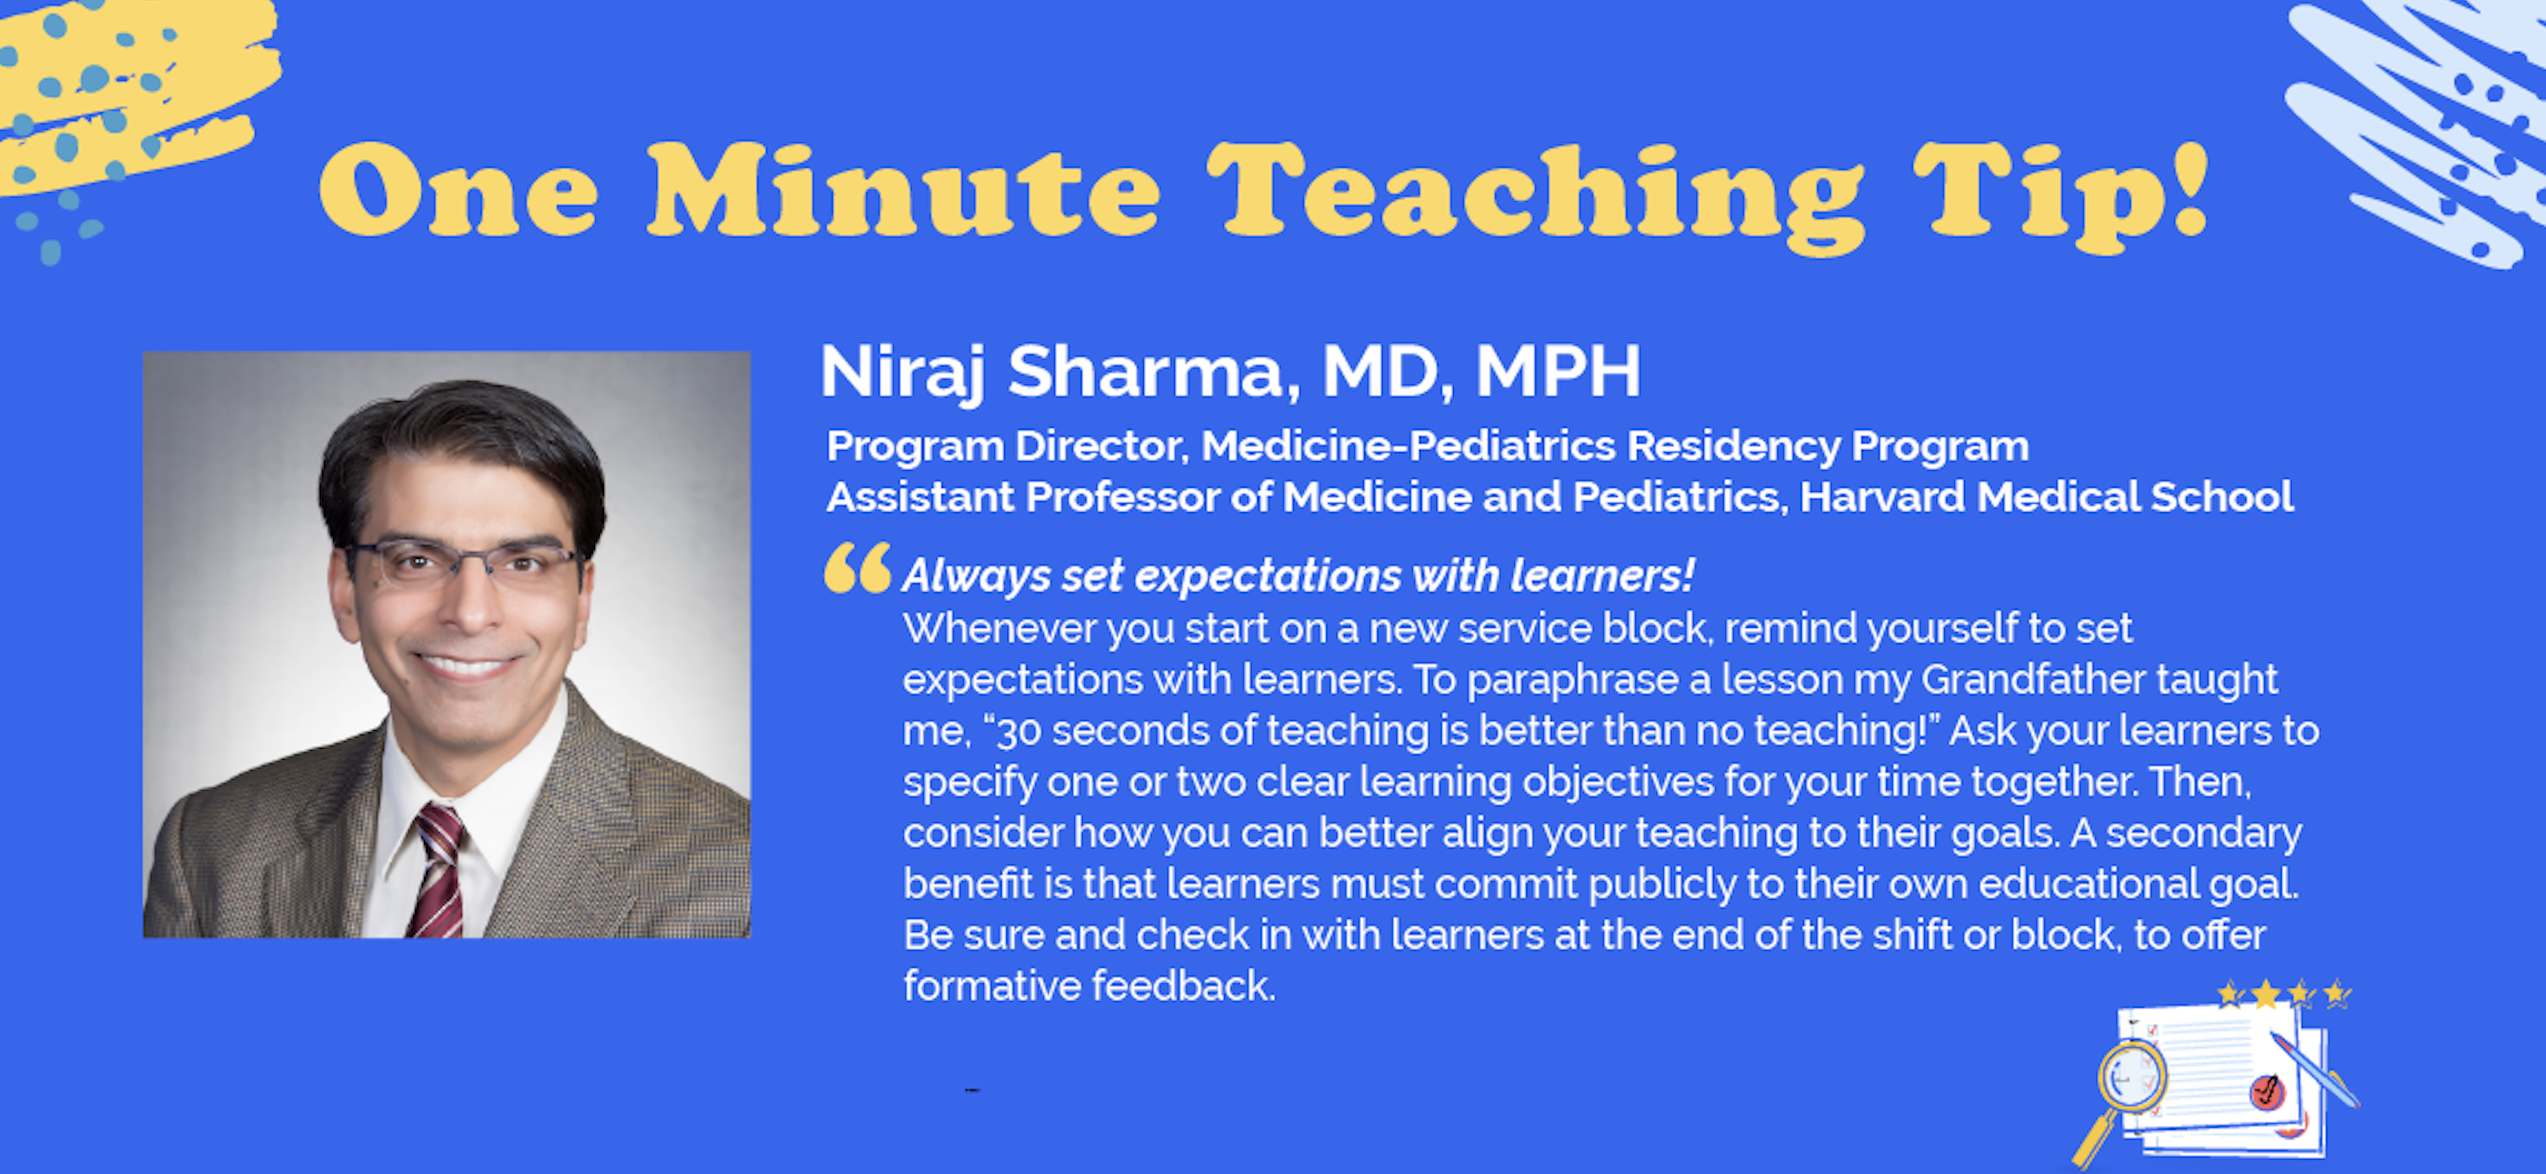 Niraj Sharma picture for teach tip